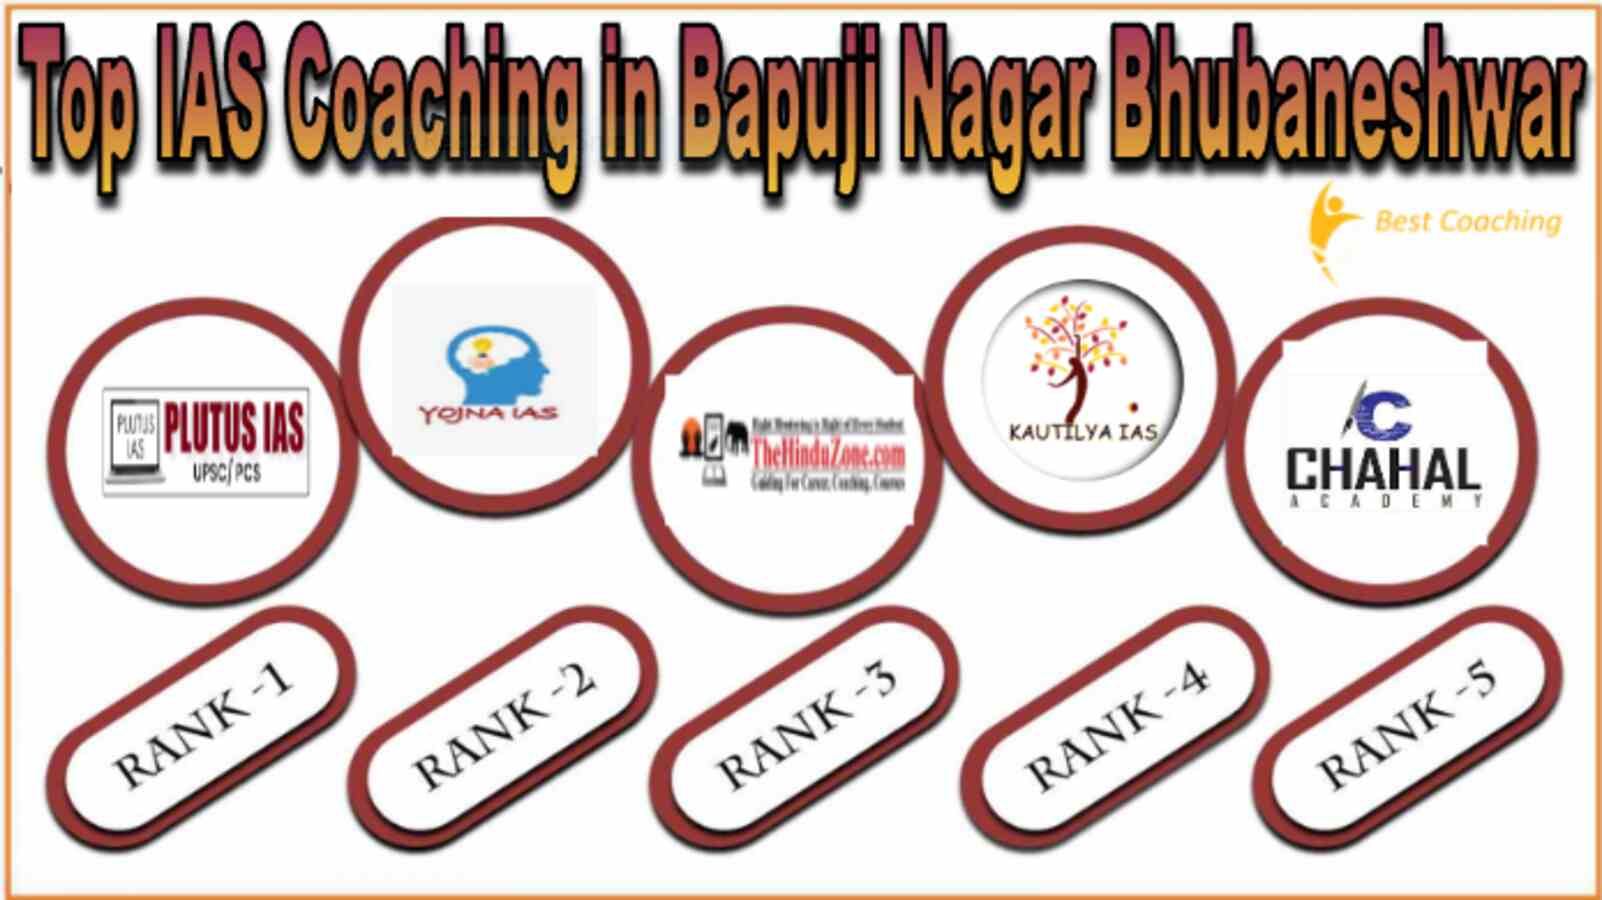 Remove term: Top IAS coaching in Bapuji Nagar Bhubaneshwar Top IAS coaching in Bapuji Nagar Bhubaneshwar